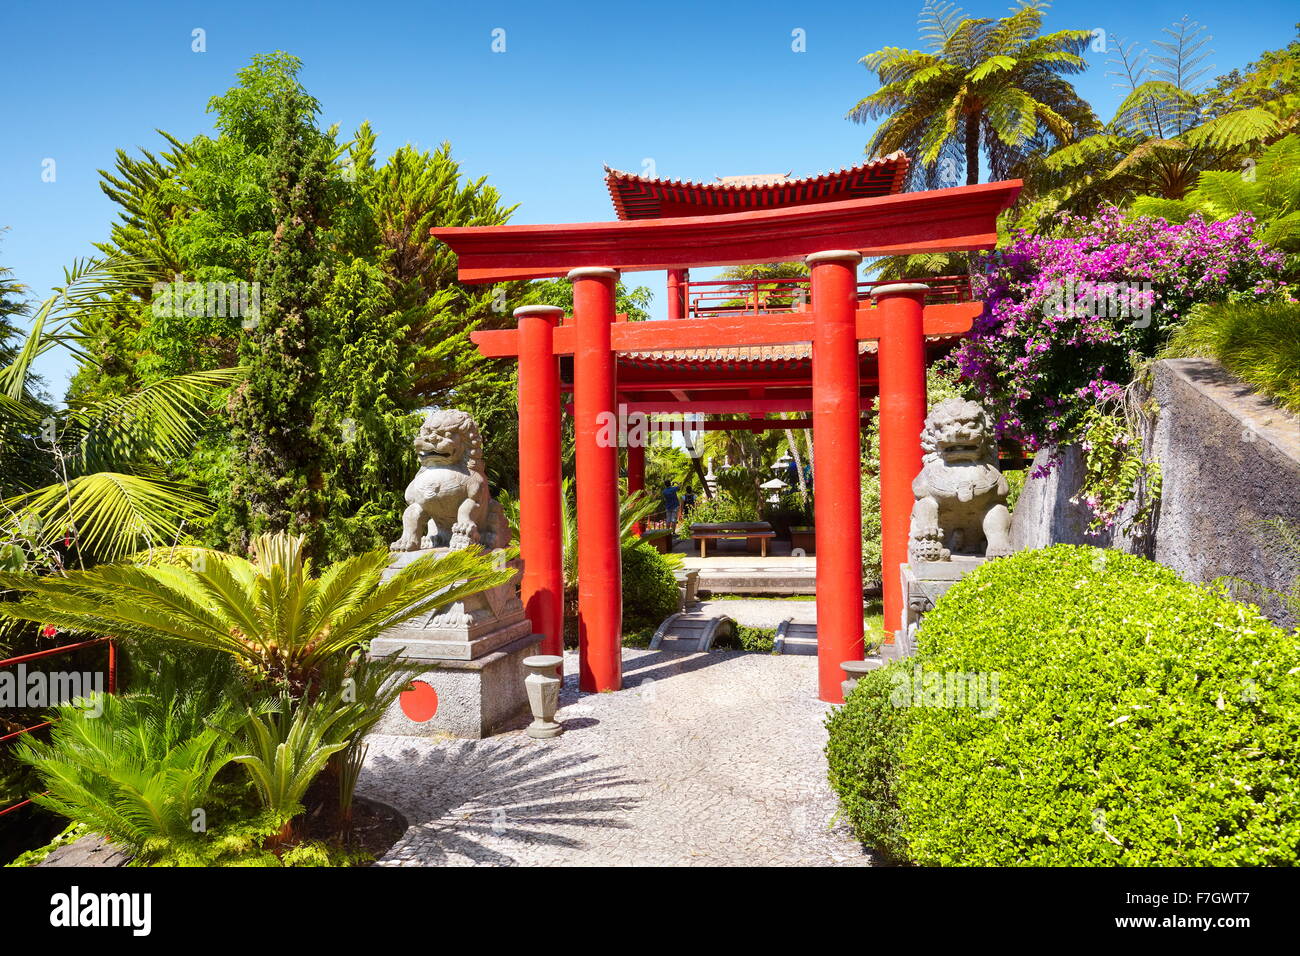 Monte Palace Tropical Garden (jardin japonais) - monte, l'île de Madère, Portugal Banque D'Images